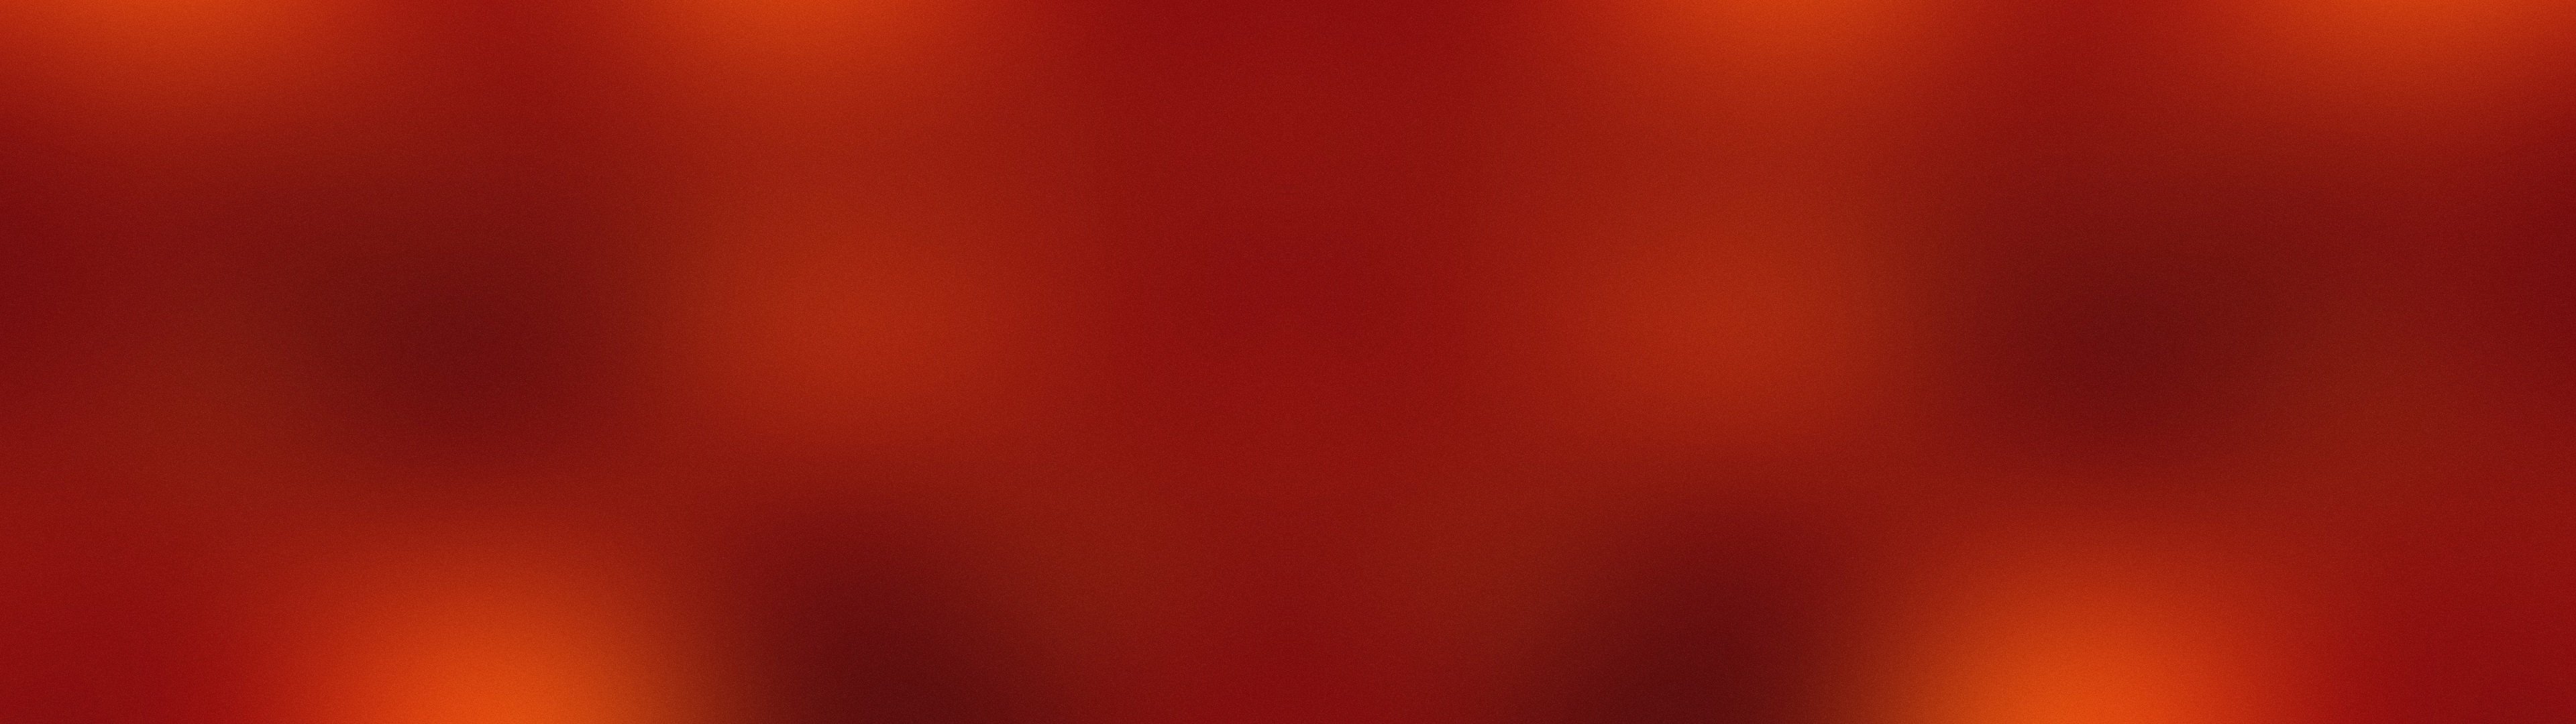 minimalistic, Red, Gaussian, Blur Wallpaper